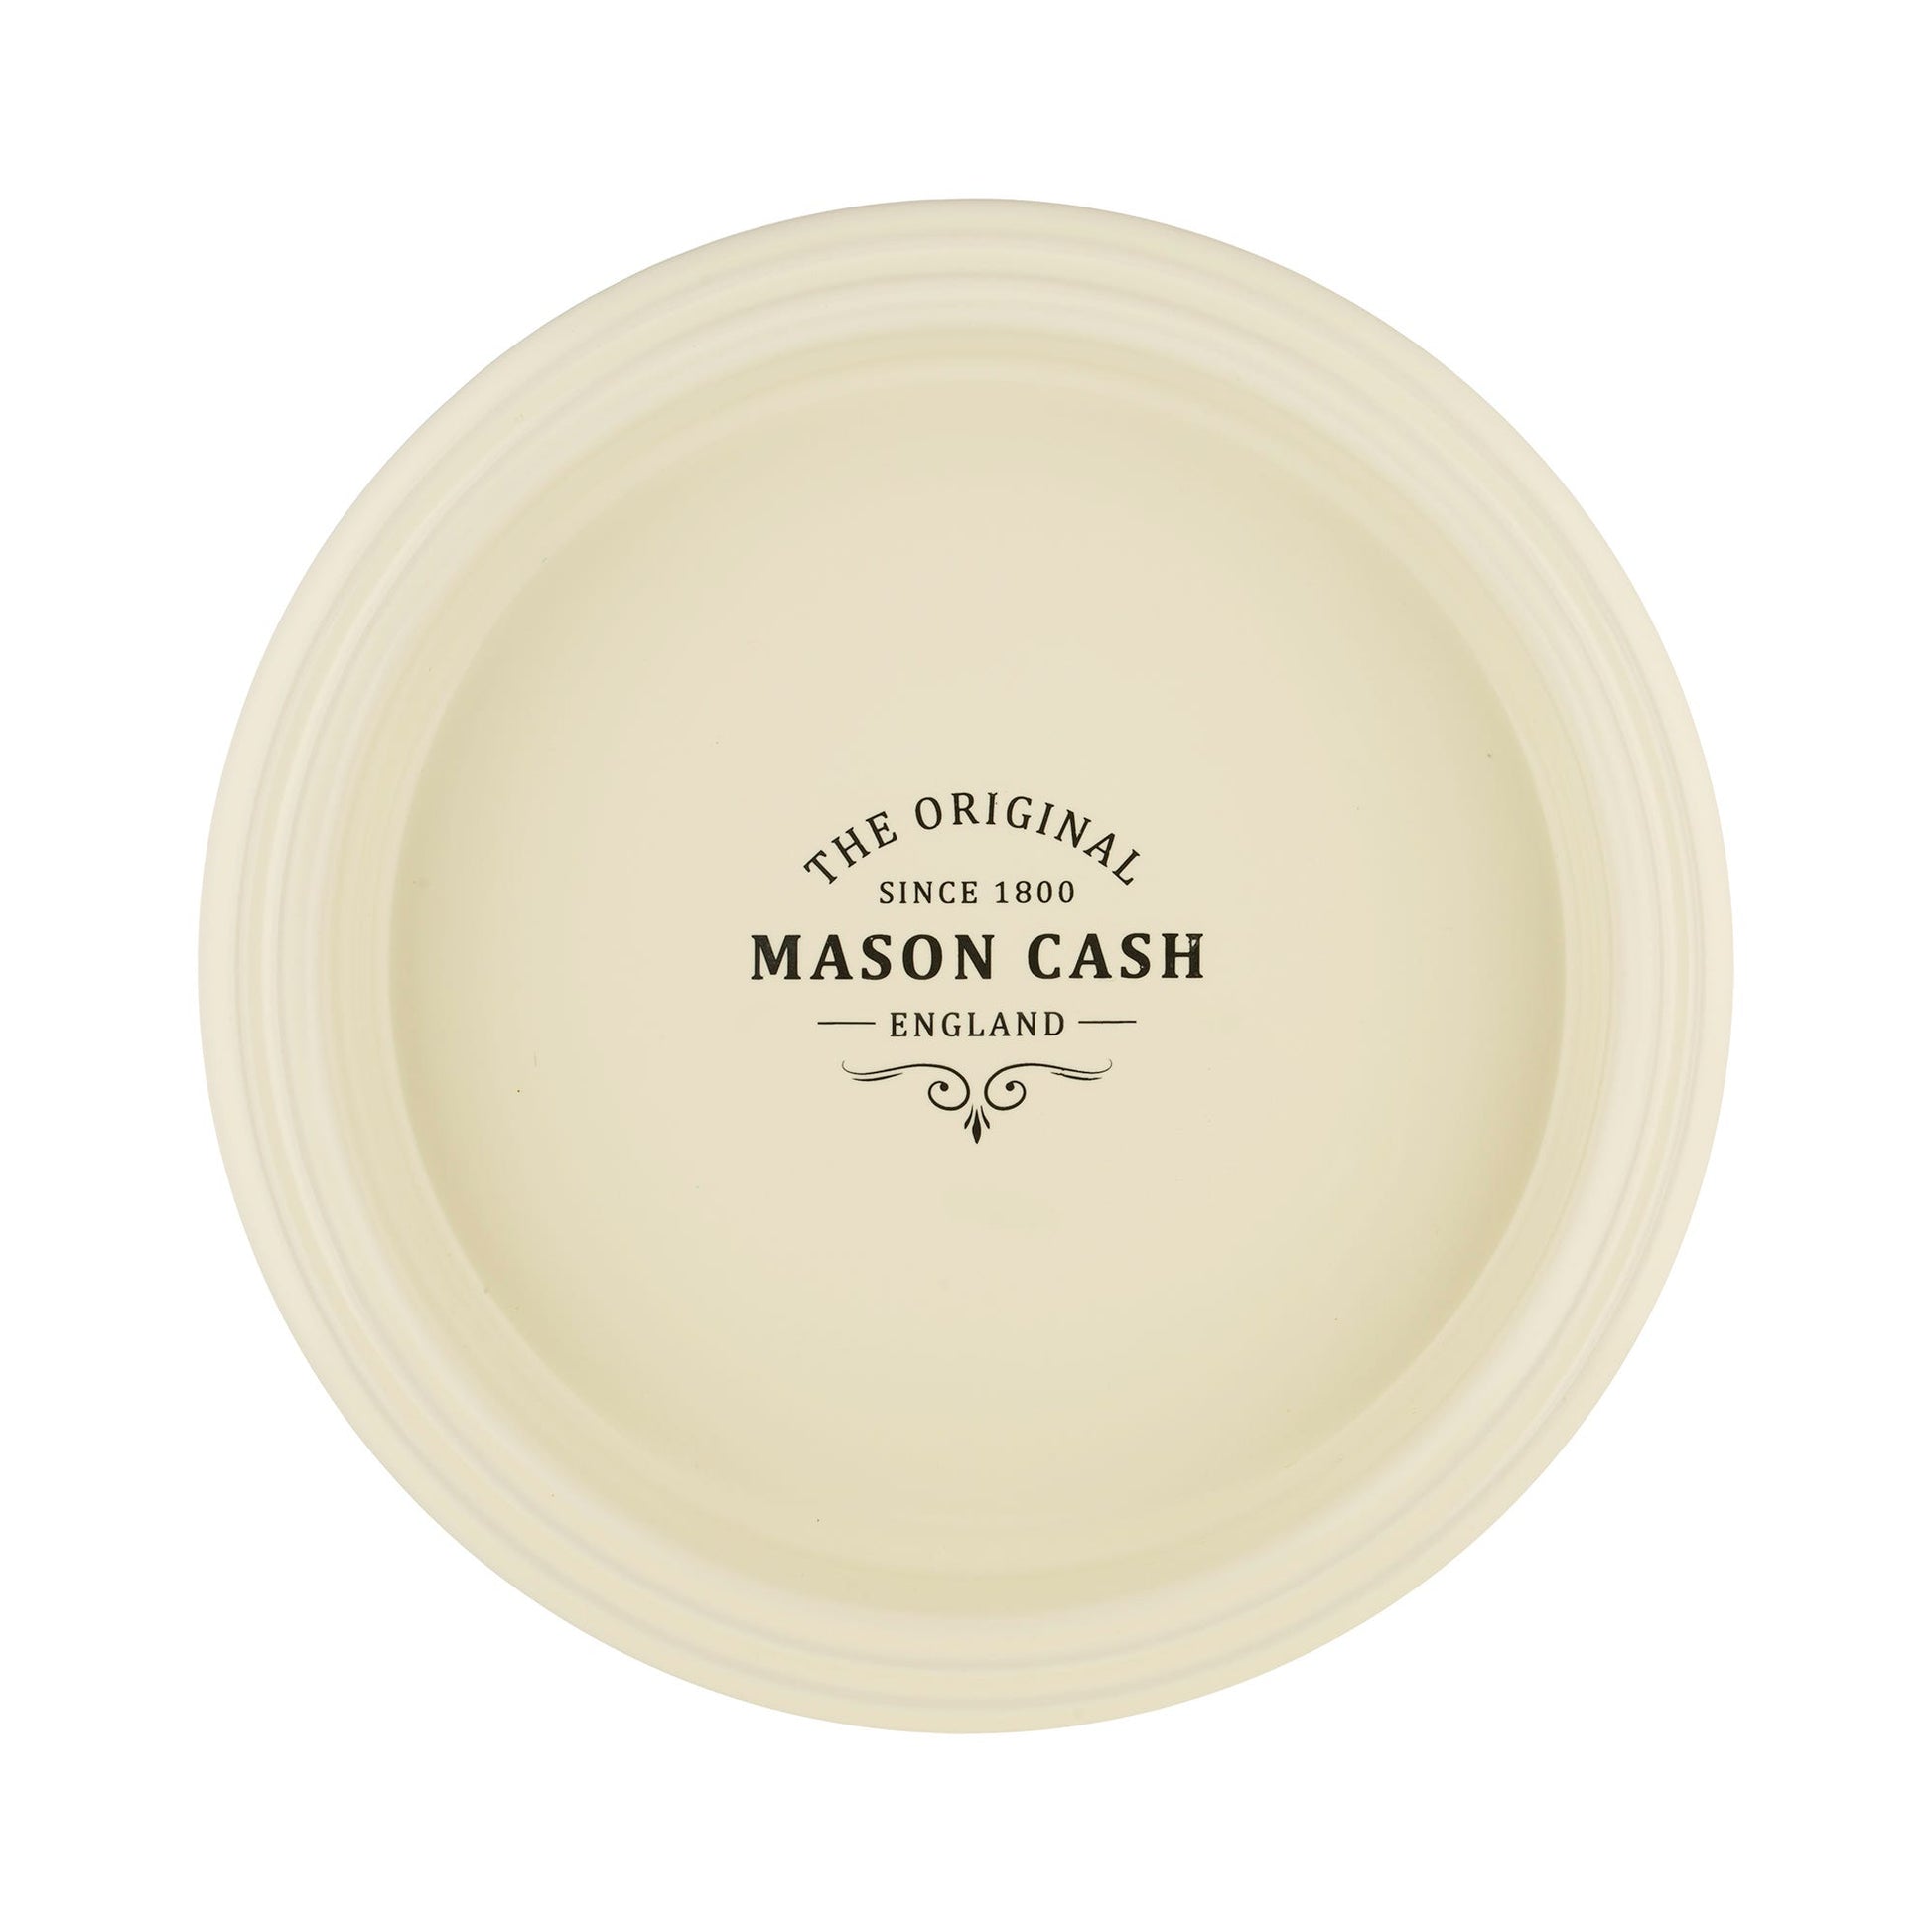 11" Classic Mason Cash Round Pie Ceramic Roasting Baking